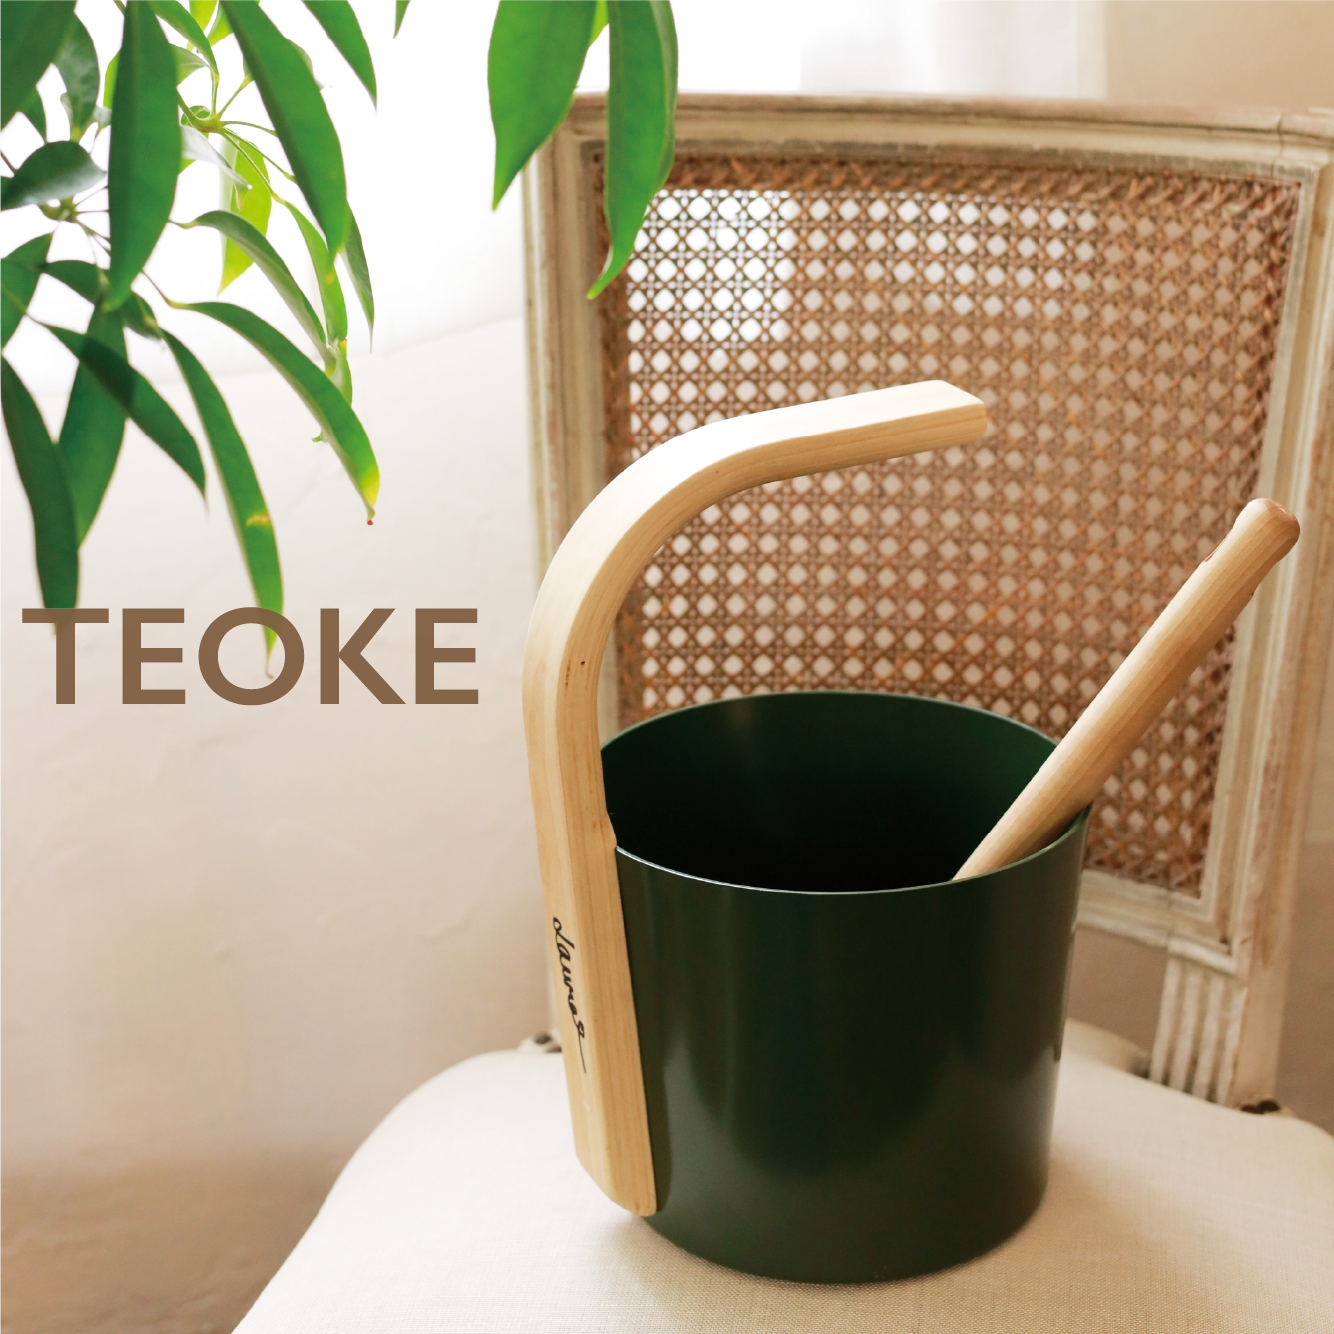 サウナバケツに着想を得た手桶"TEOKE"